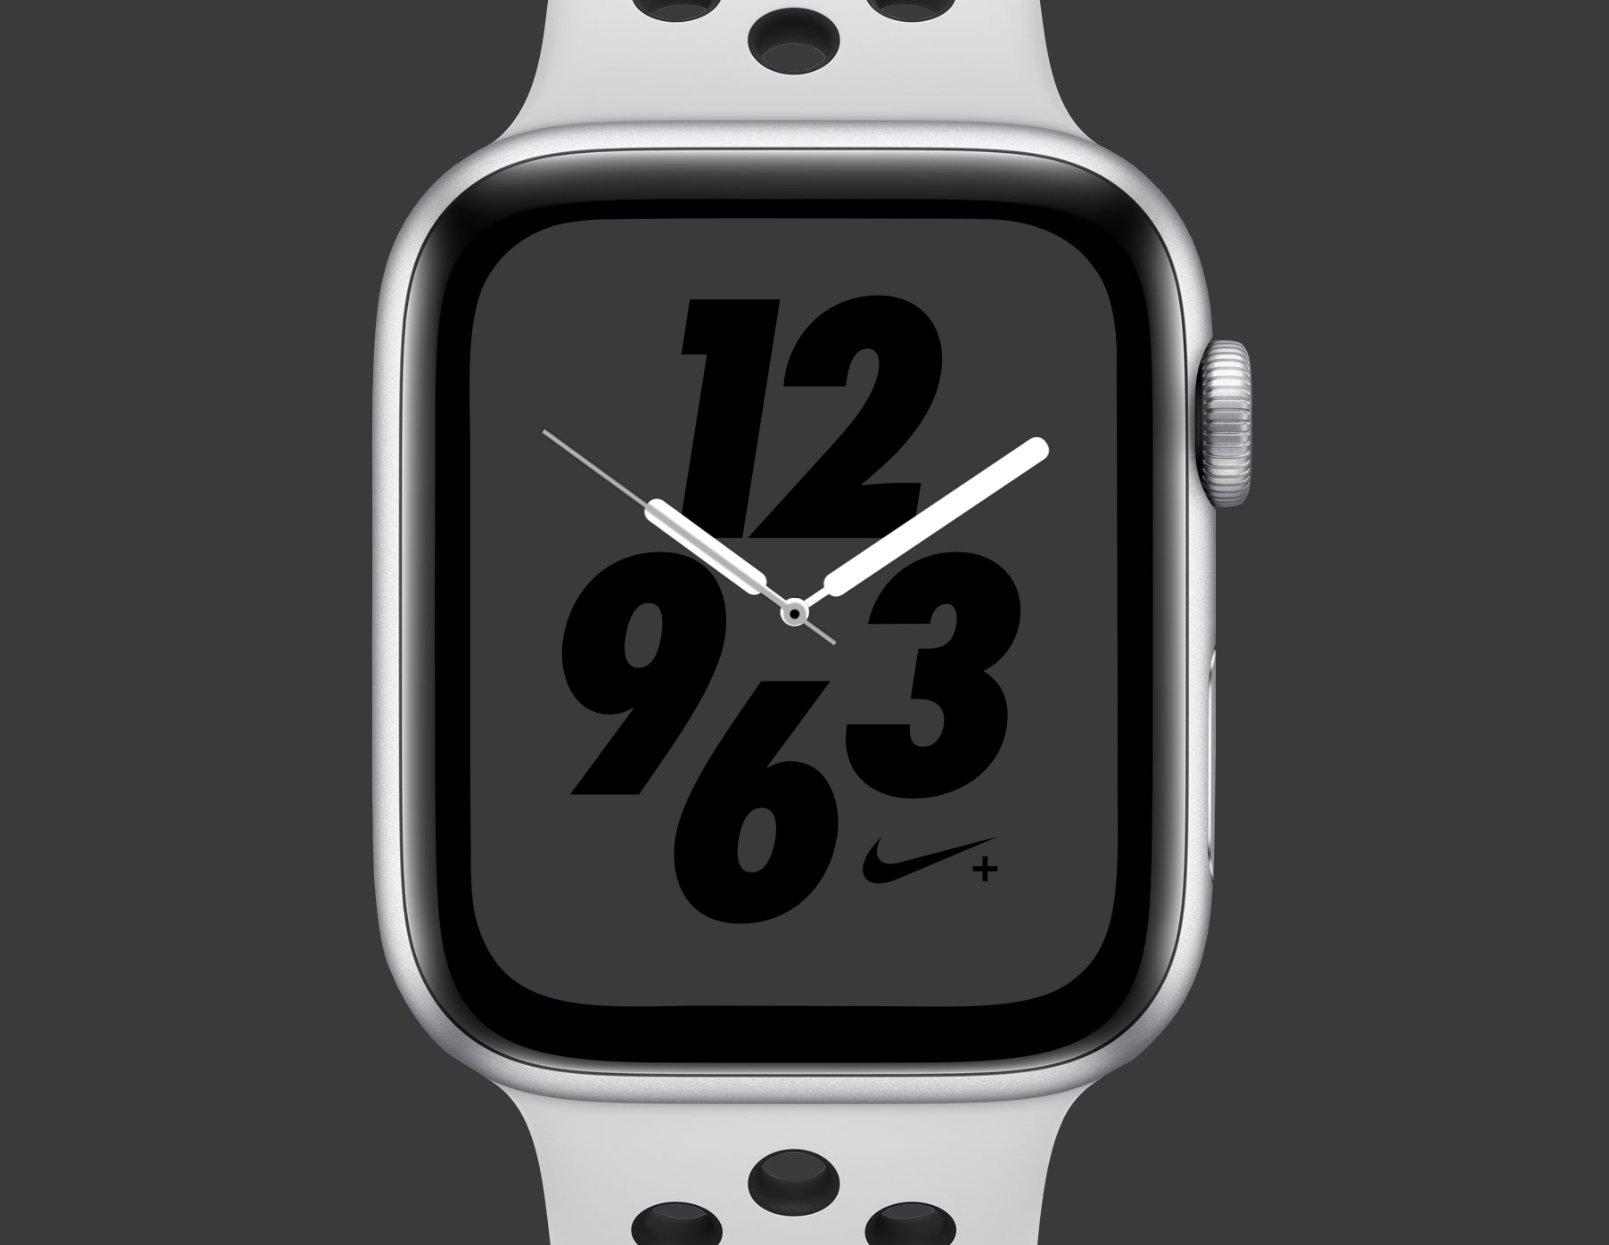 Apple Watch Series 4 Nike+